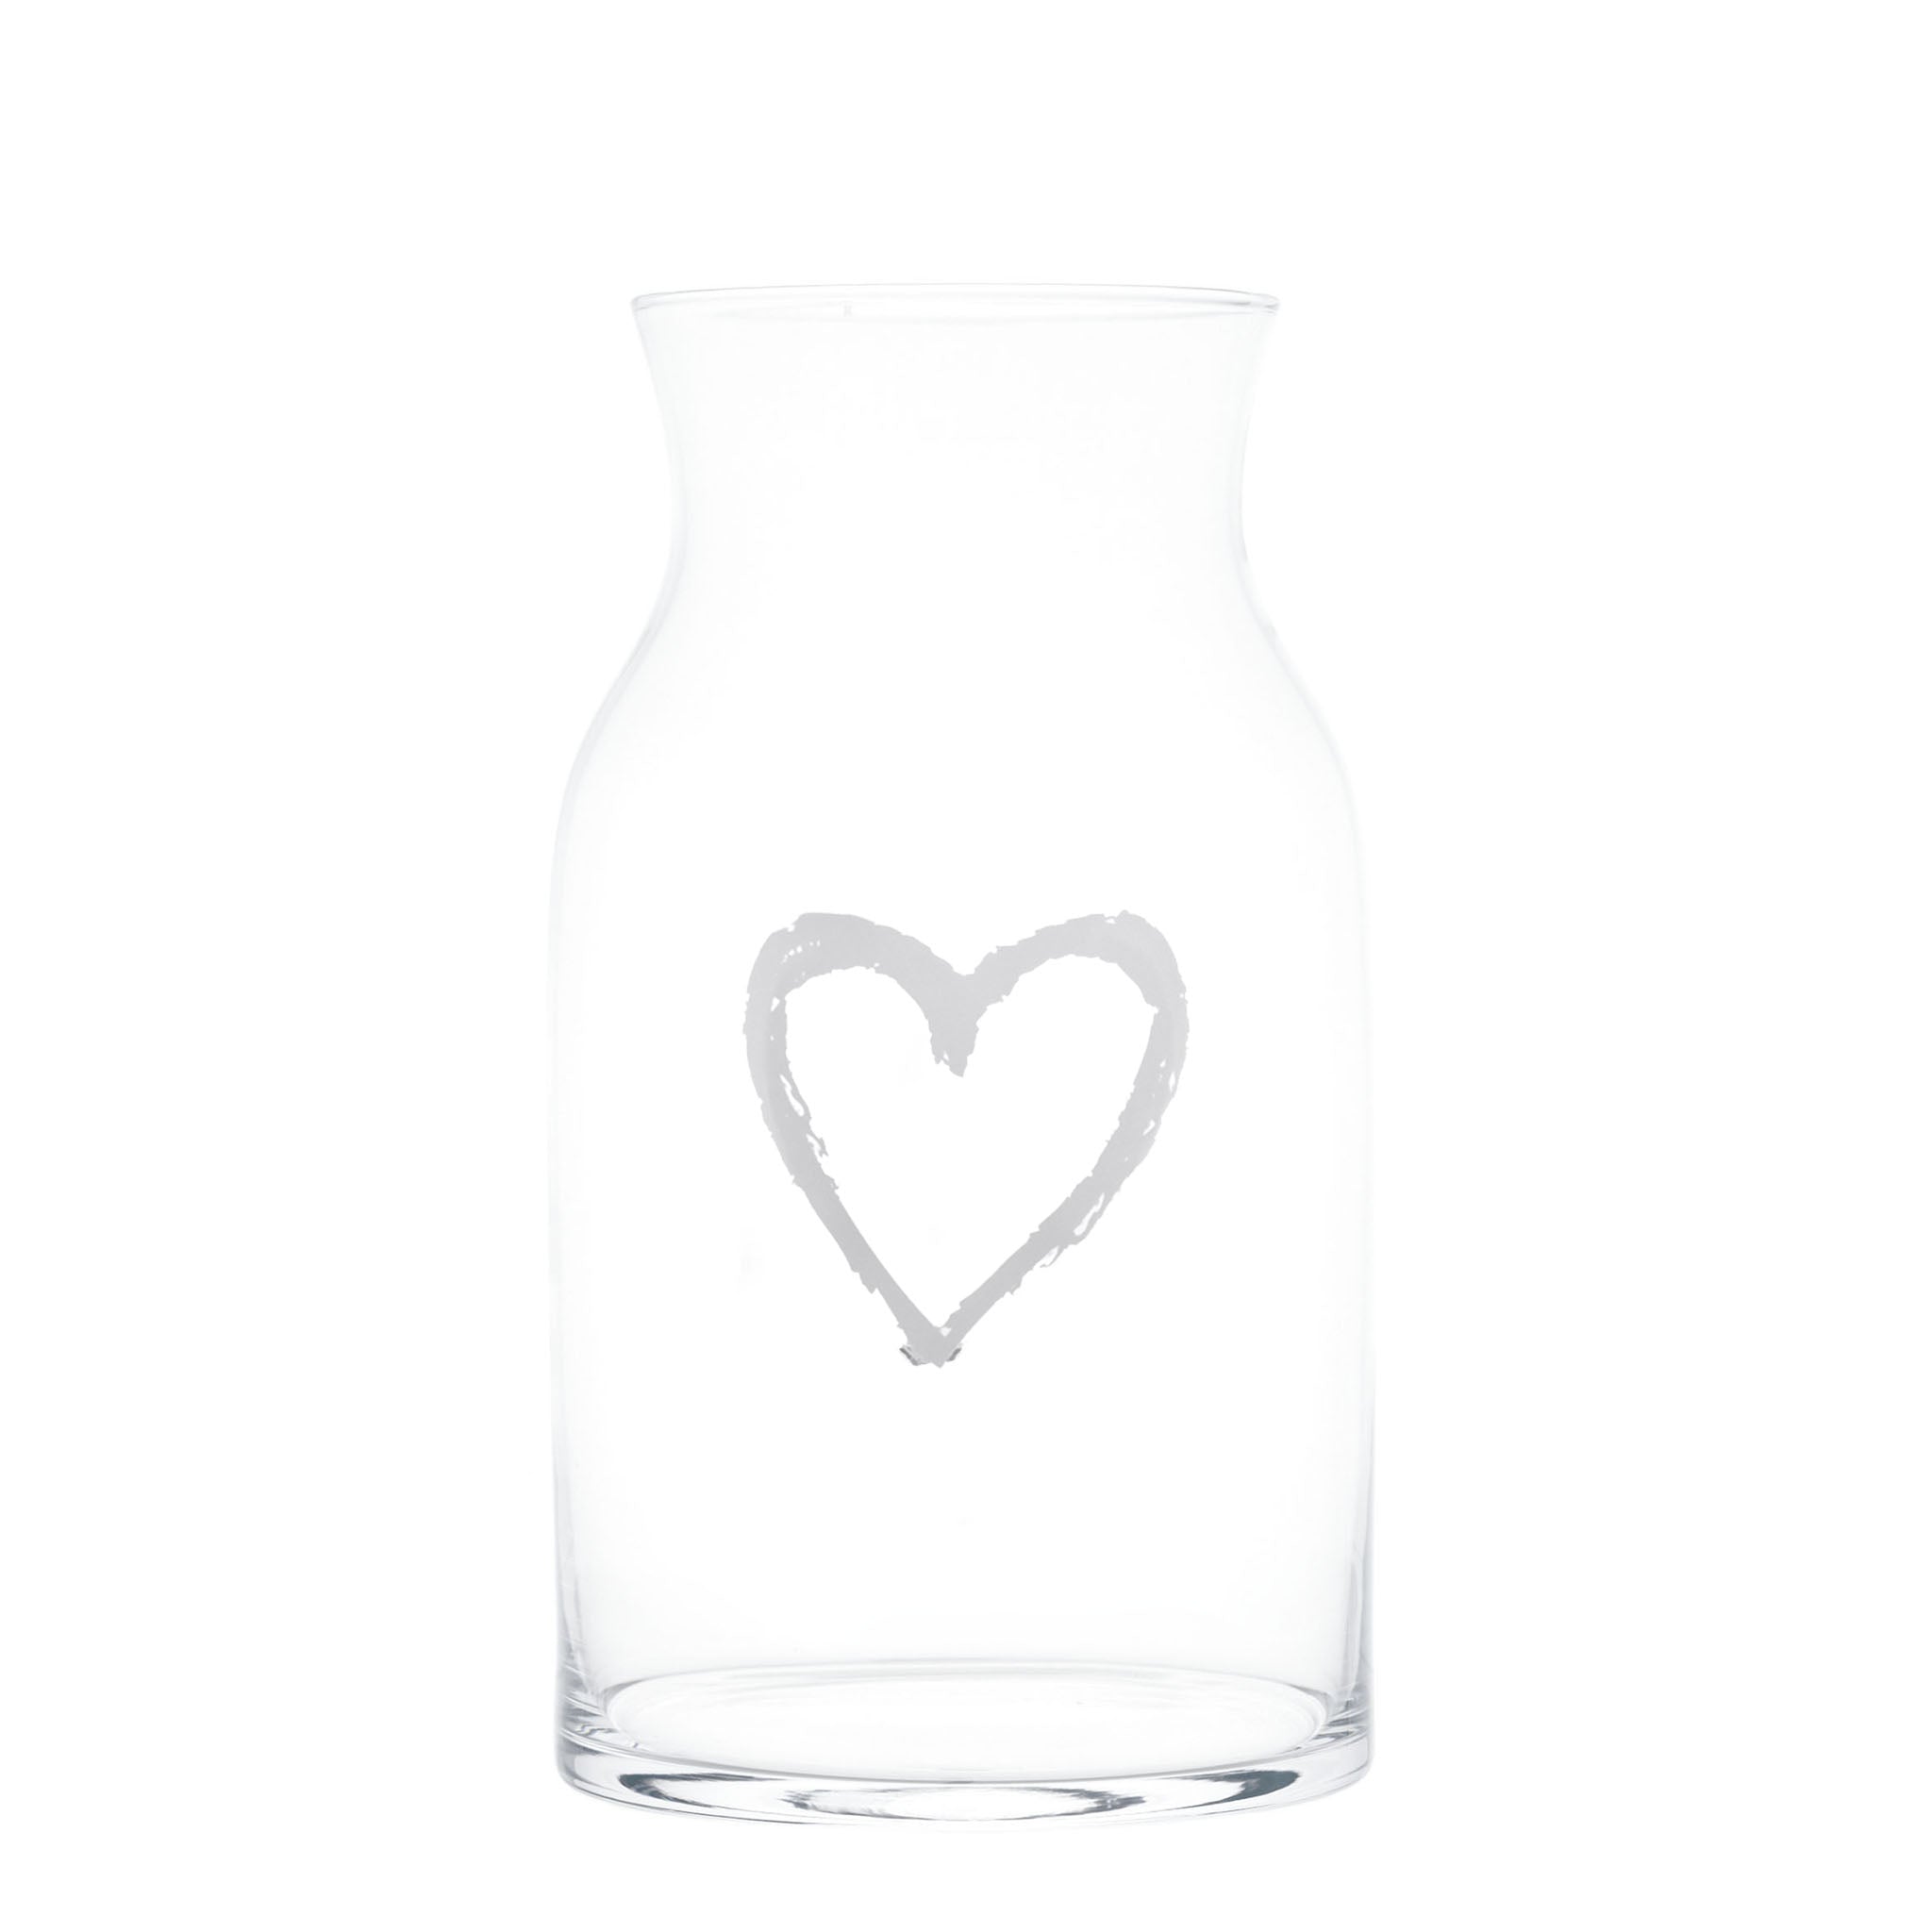 Braffiti Heart décorer le vase Plass